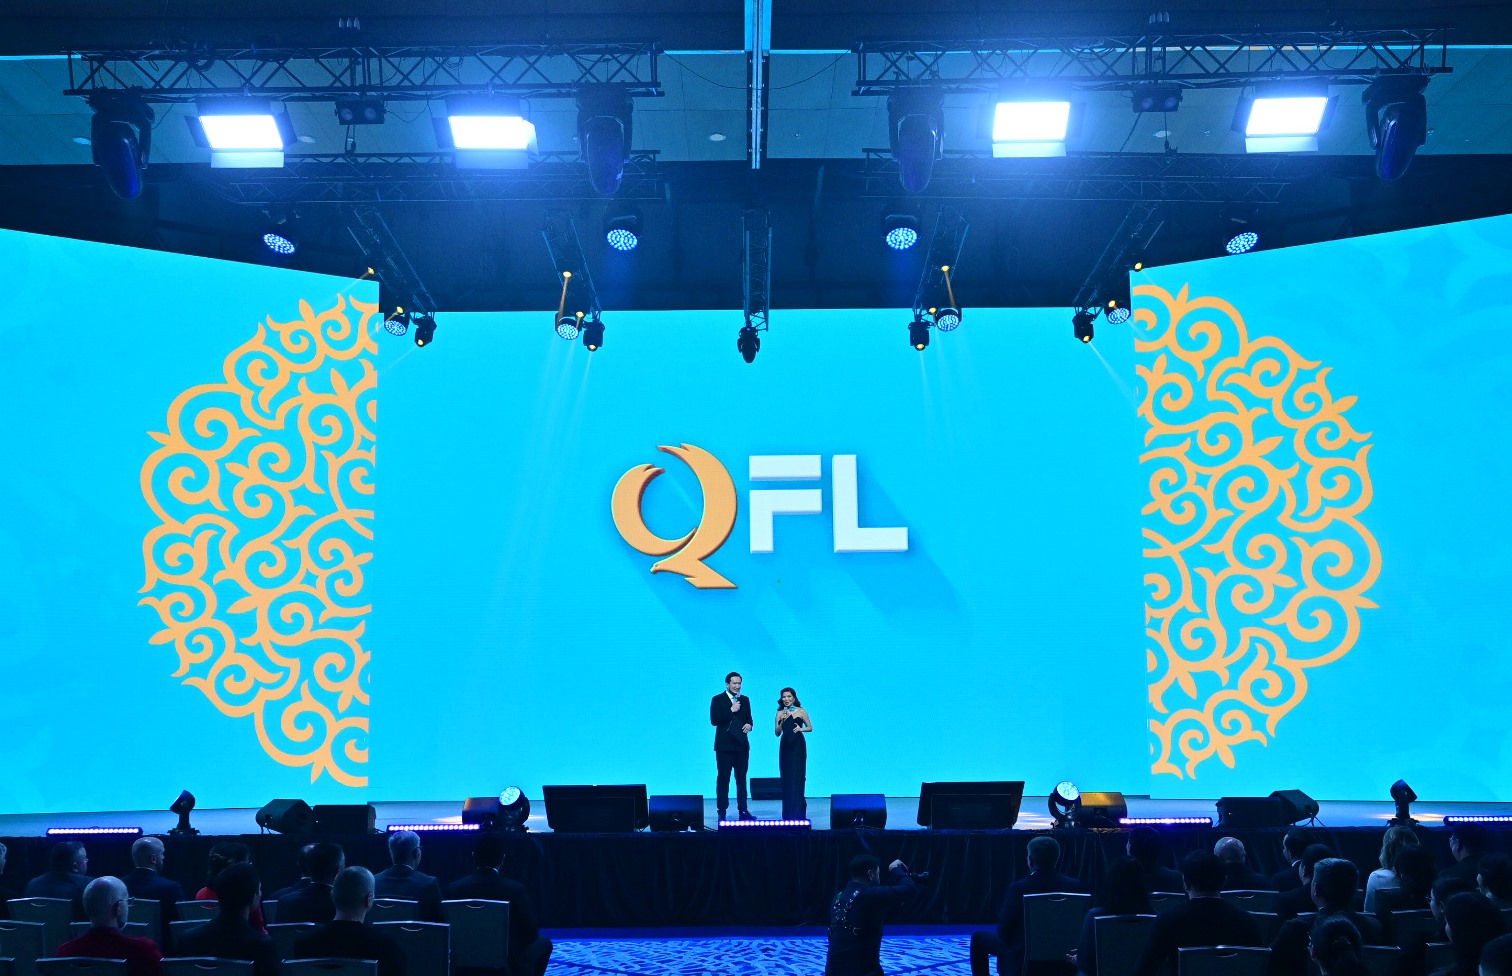 ПФЛК официально сменил название на QFL: о ребрендинге и новых амбициях рассказали на презентации нового бренда и сезона